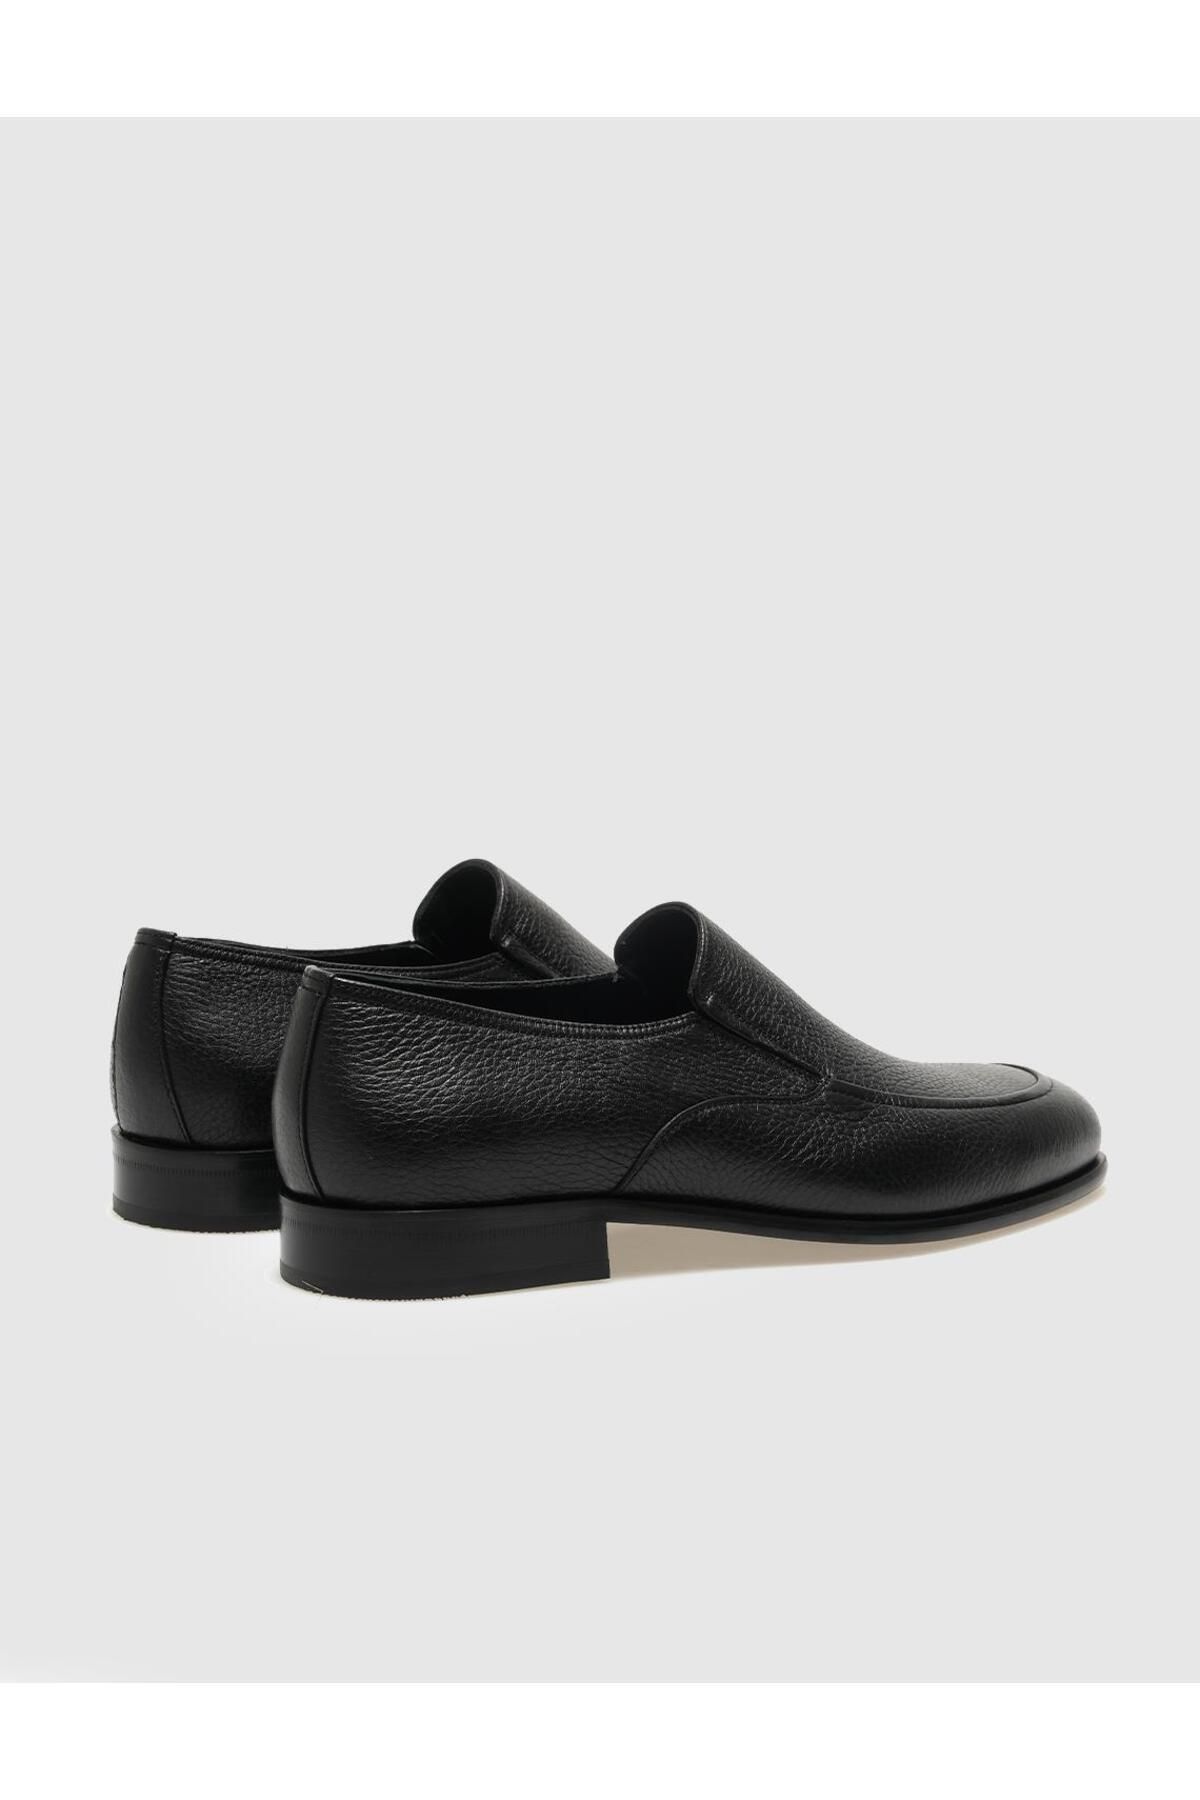 Cabani کفش های کلاسیک مردانه سیاه چرمی واقعی